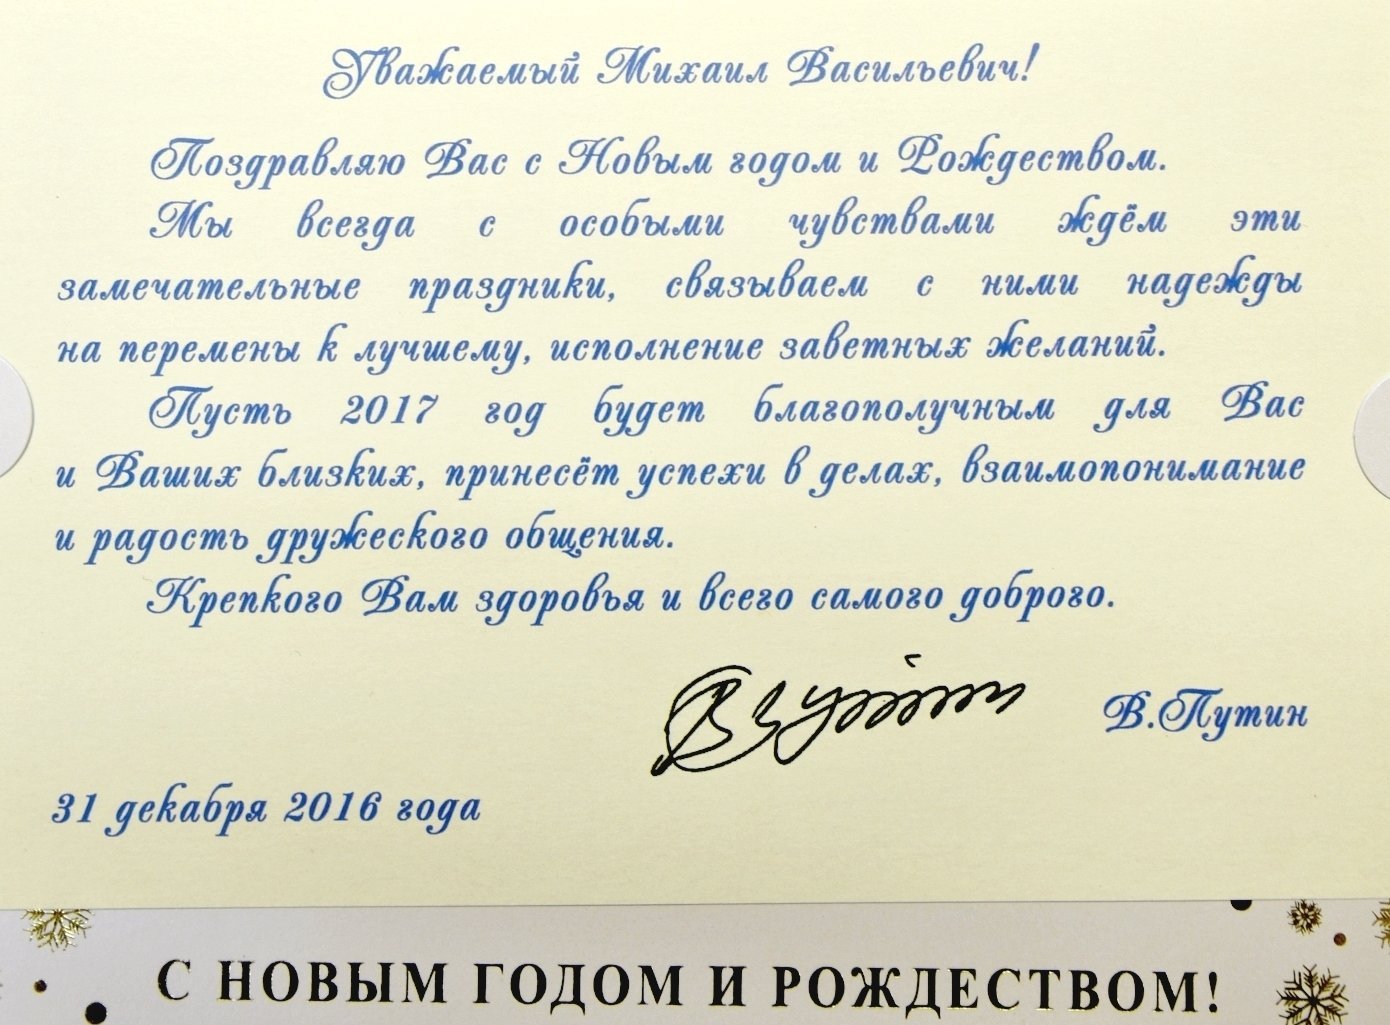 Придумай текст поздравления. Поздравление губернатора с новым годом. Официальные поздравление с днём рождения от Путина. Официальное поздравление президента с днем рождения. Поздравление с новым годом официальное от губернатора.